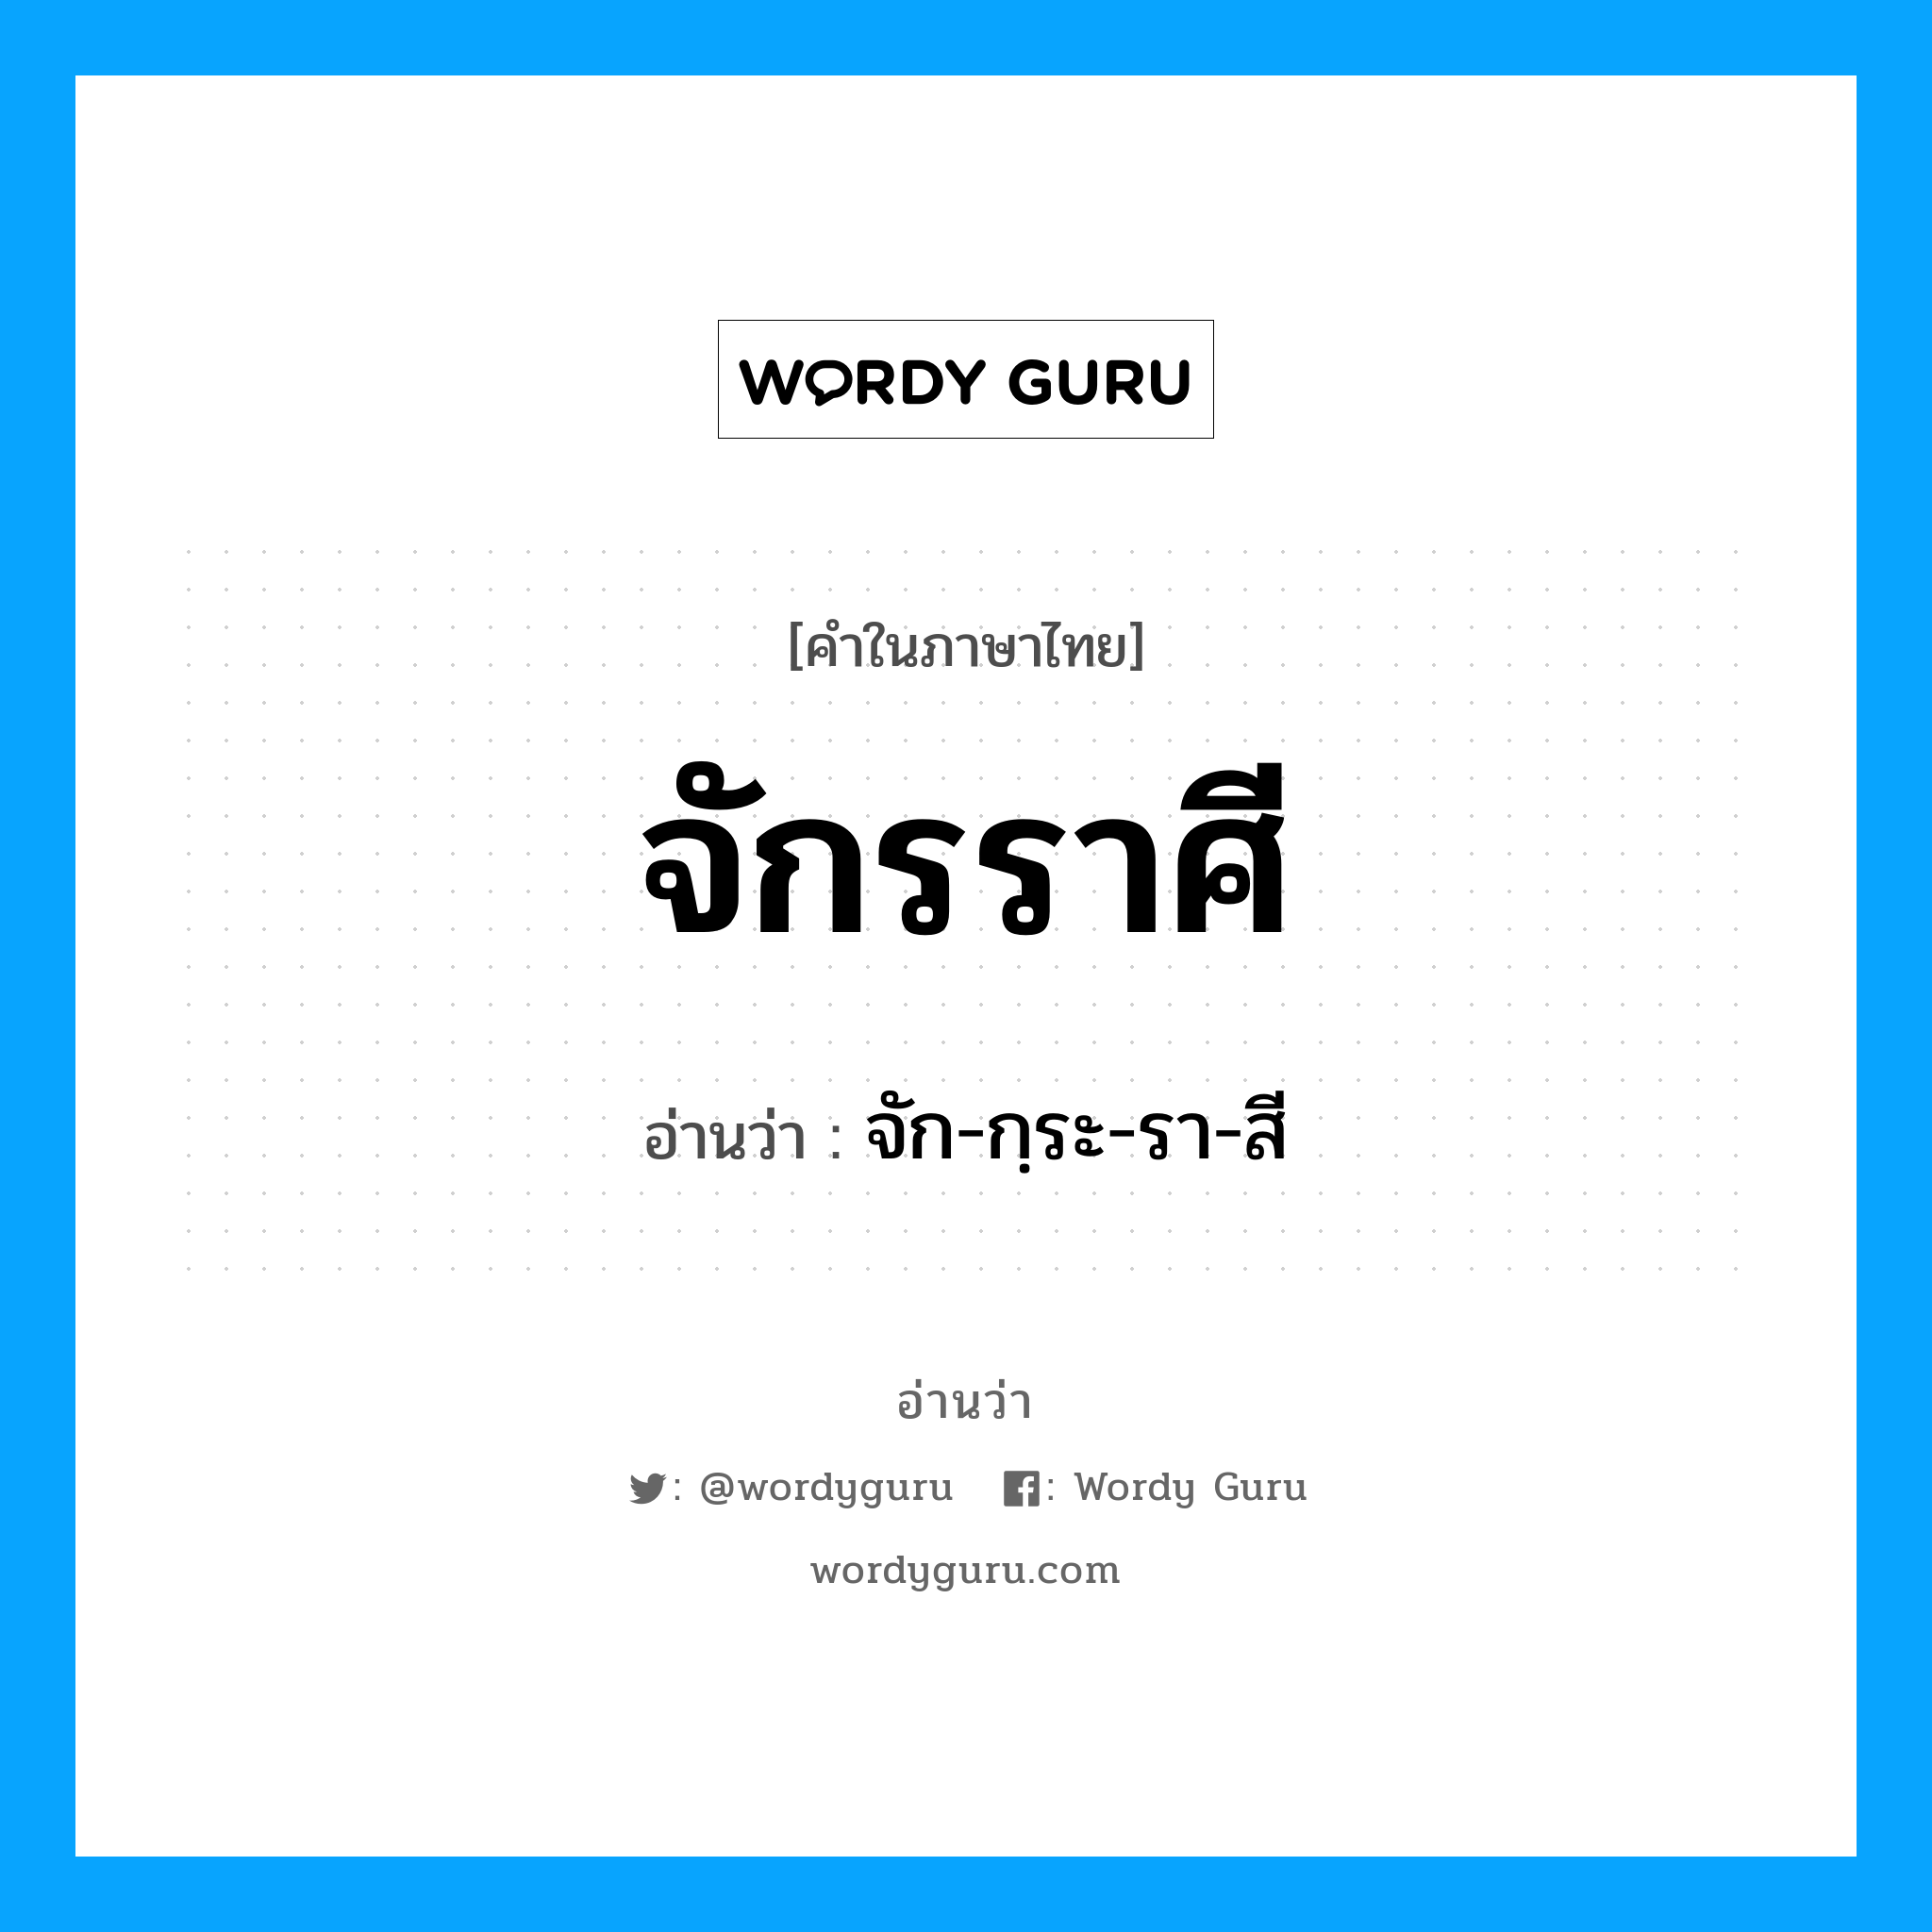 จัก-กฺระ-รา-สี เป็นคำอ่านของคำไหน?, คำในภาษาไทย จัก-กฺระ-รา-สี อ่านว่า จักรราศี